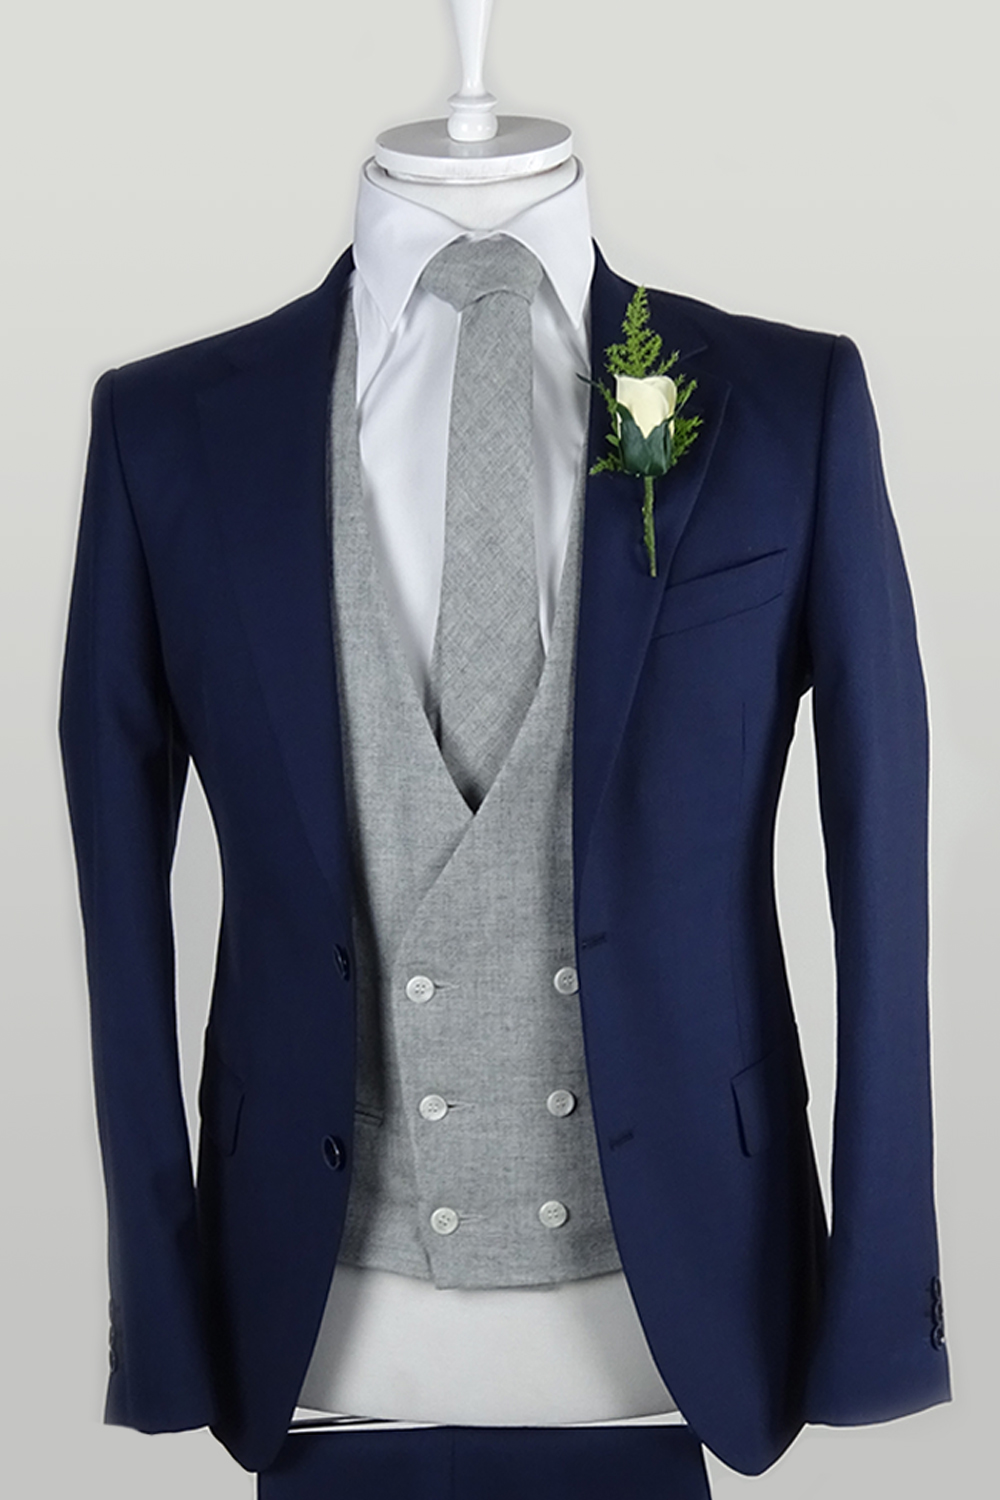 Navy Suit light grey contrast vest/rental option 120 Euro - Tom Murphy